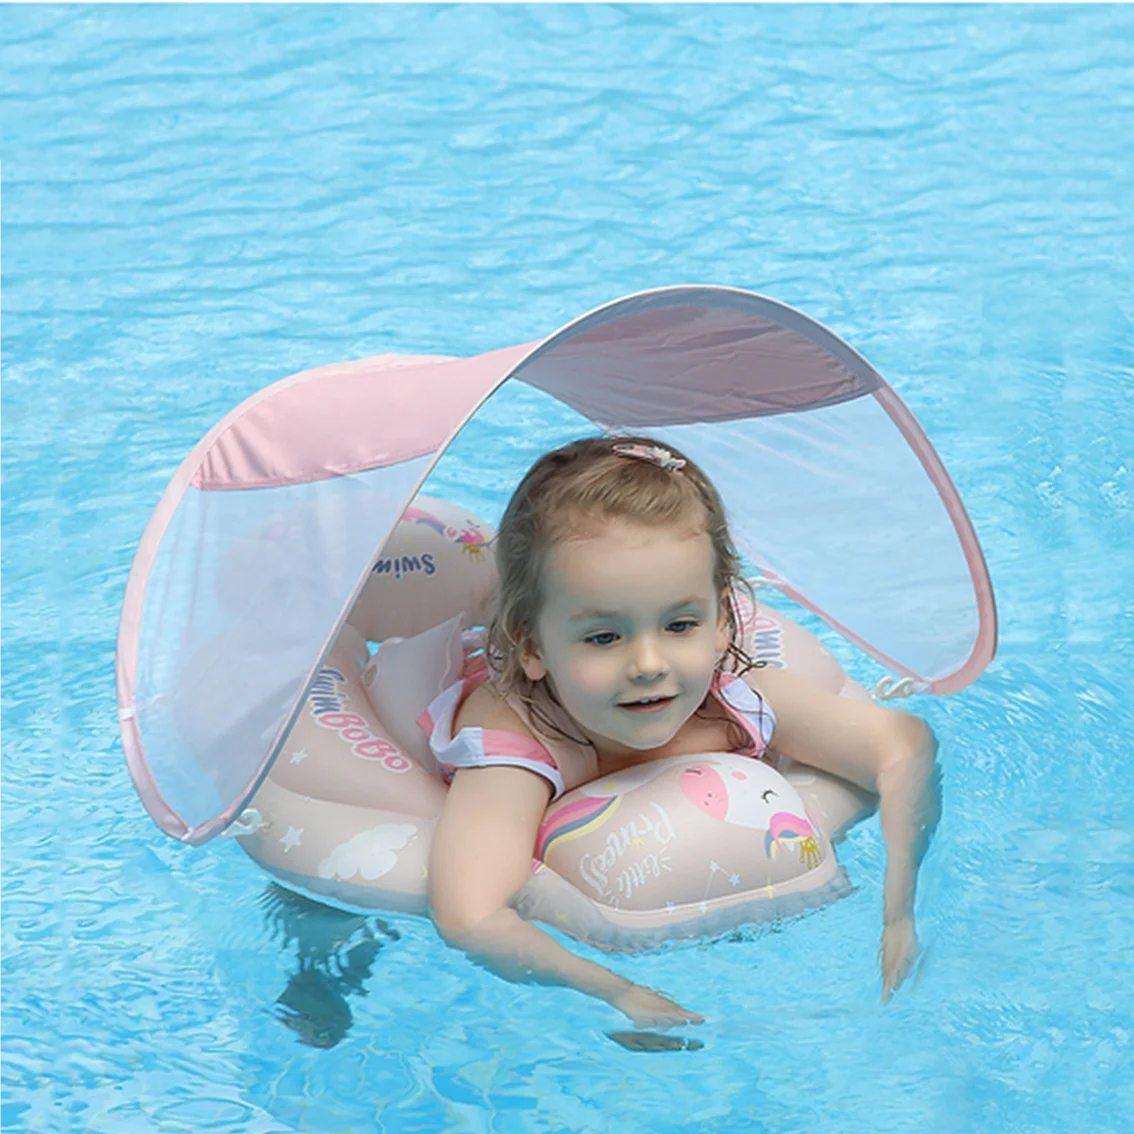 

Детское плавающее надувное кольцо, детское плавательное кольцо с солнцезащитным козырьком, аксессуары для детского бассейна и ванны, летние игрушки